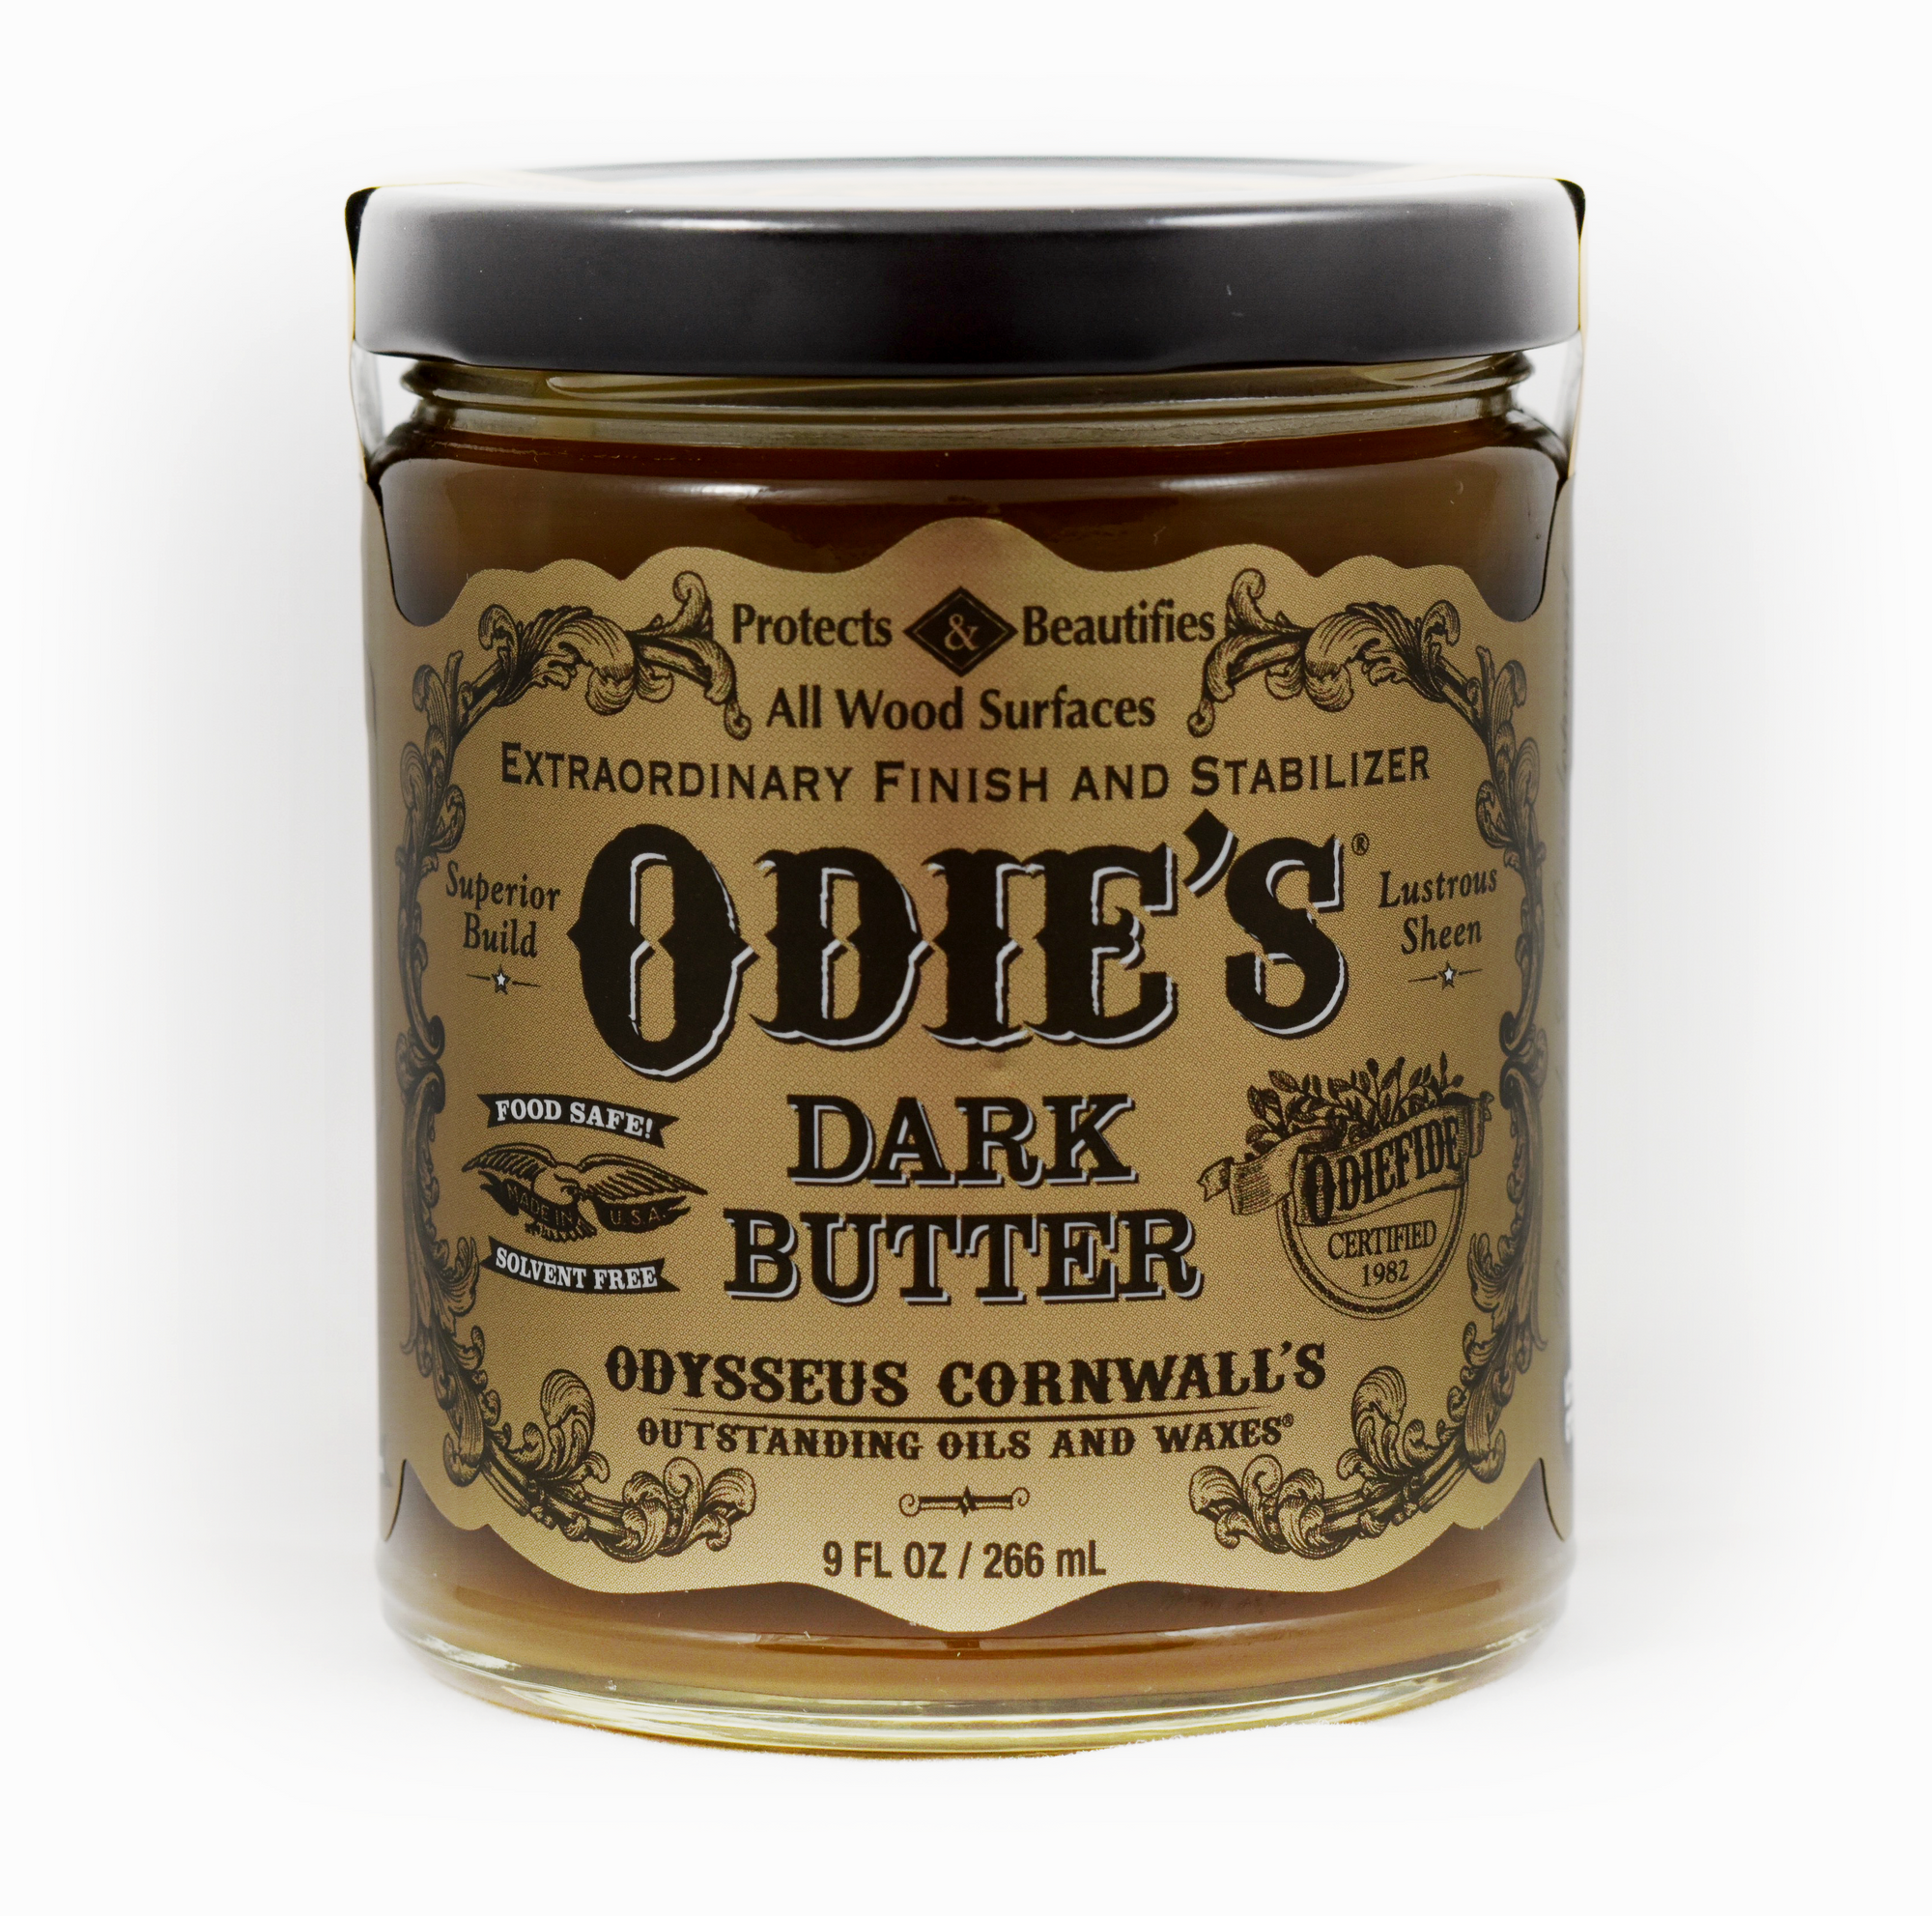 Odie's Dark Butter